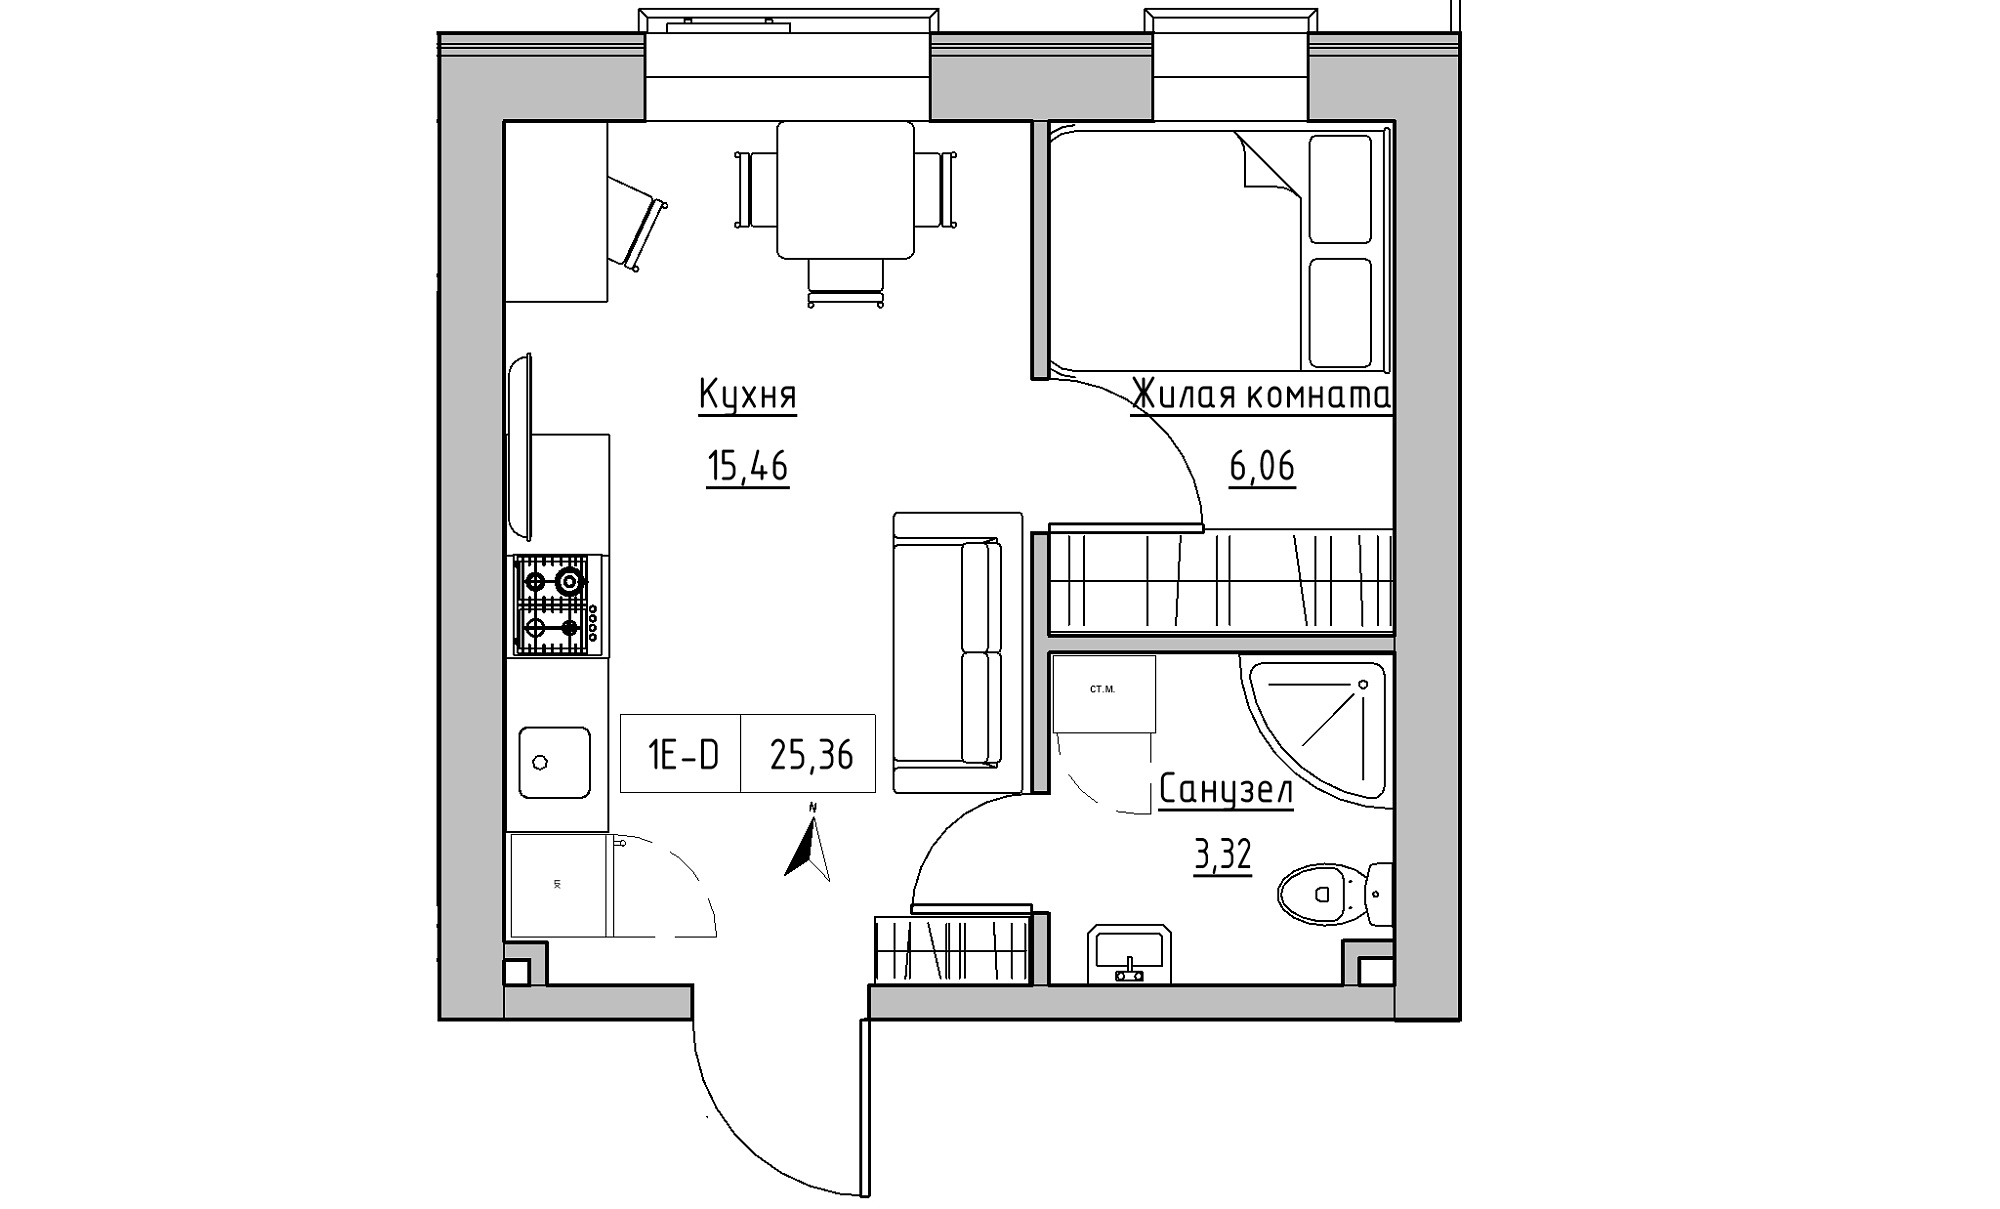 Планировка 1-к квартира площей 25.36м2, KS-016-04/0002.